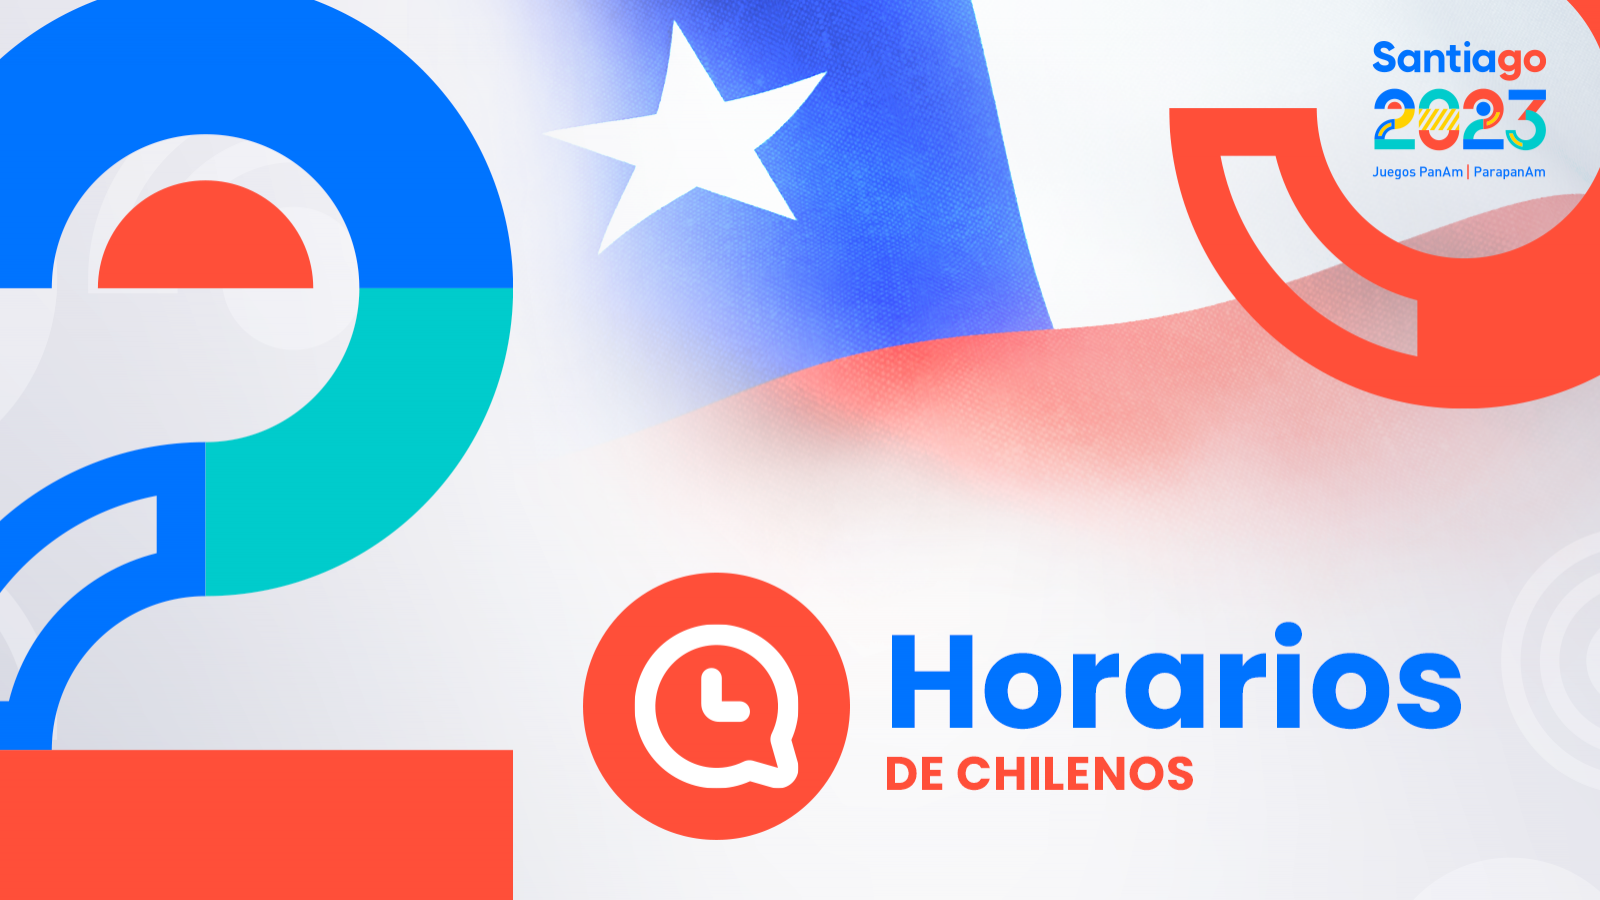 HORARIOS de chilenos en Santiago 2023: jueves 26 de octubre